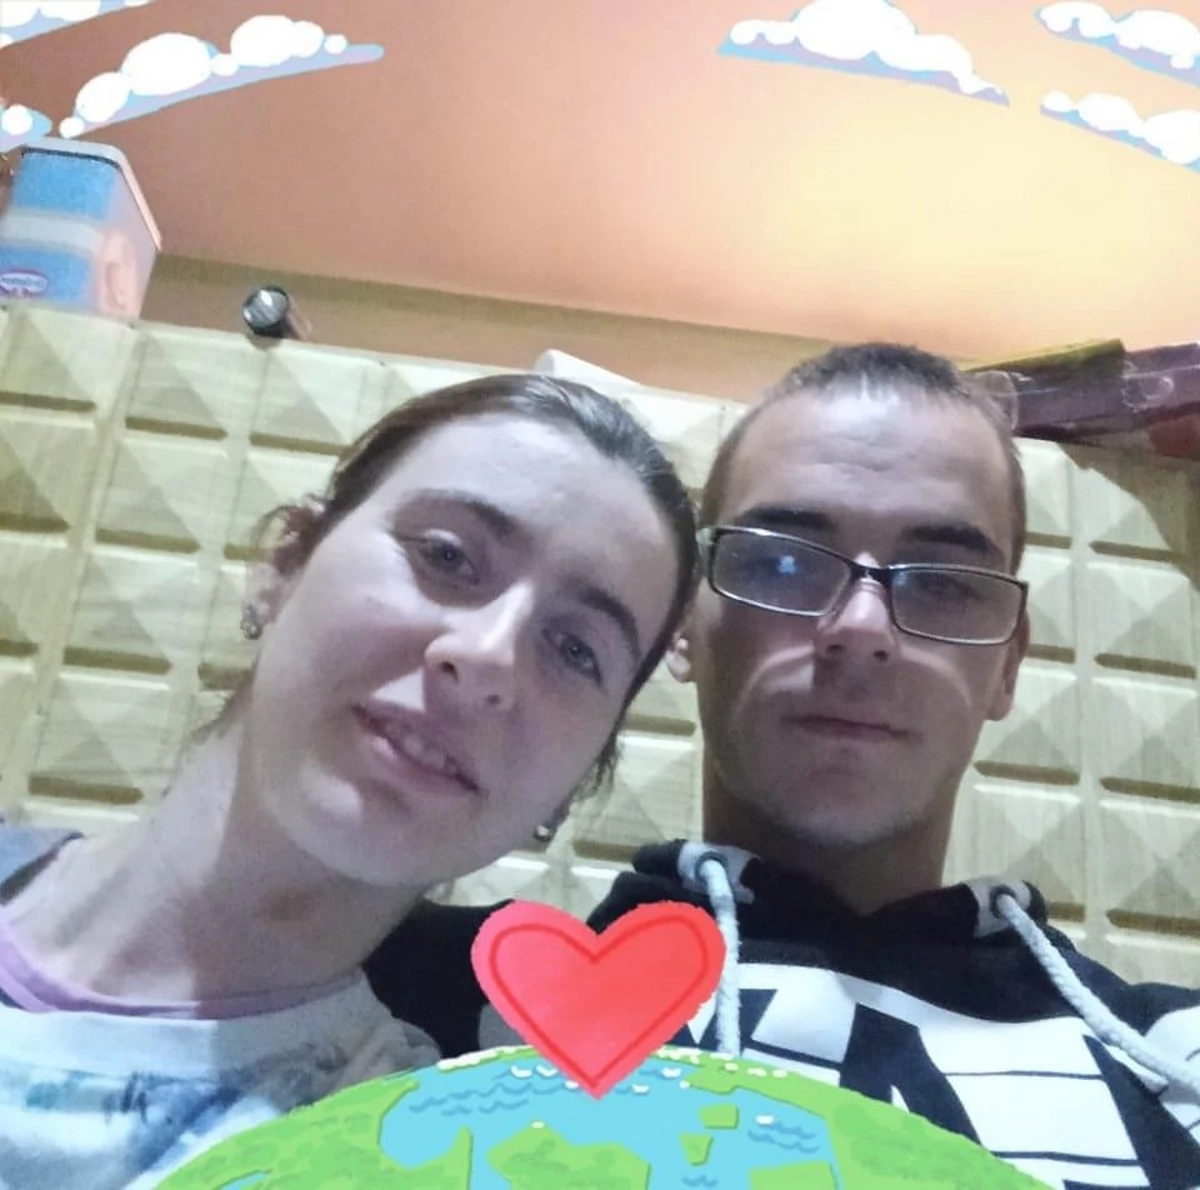 Živote, tugo: Ovo su mladić i devojka koji su umrli od gasa u stanu: “Katarina je bila trudna”